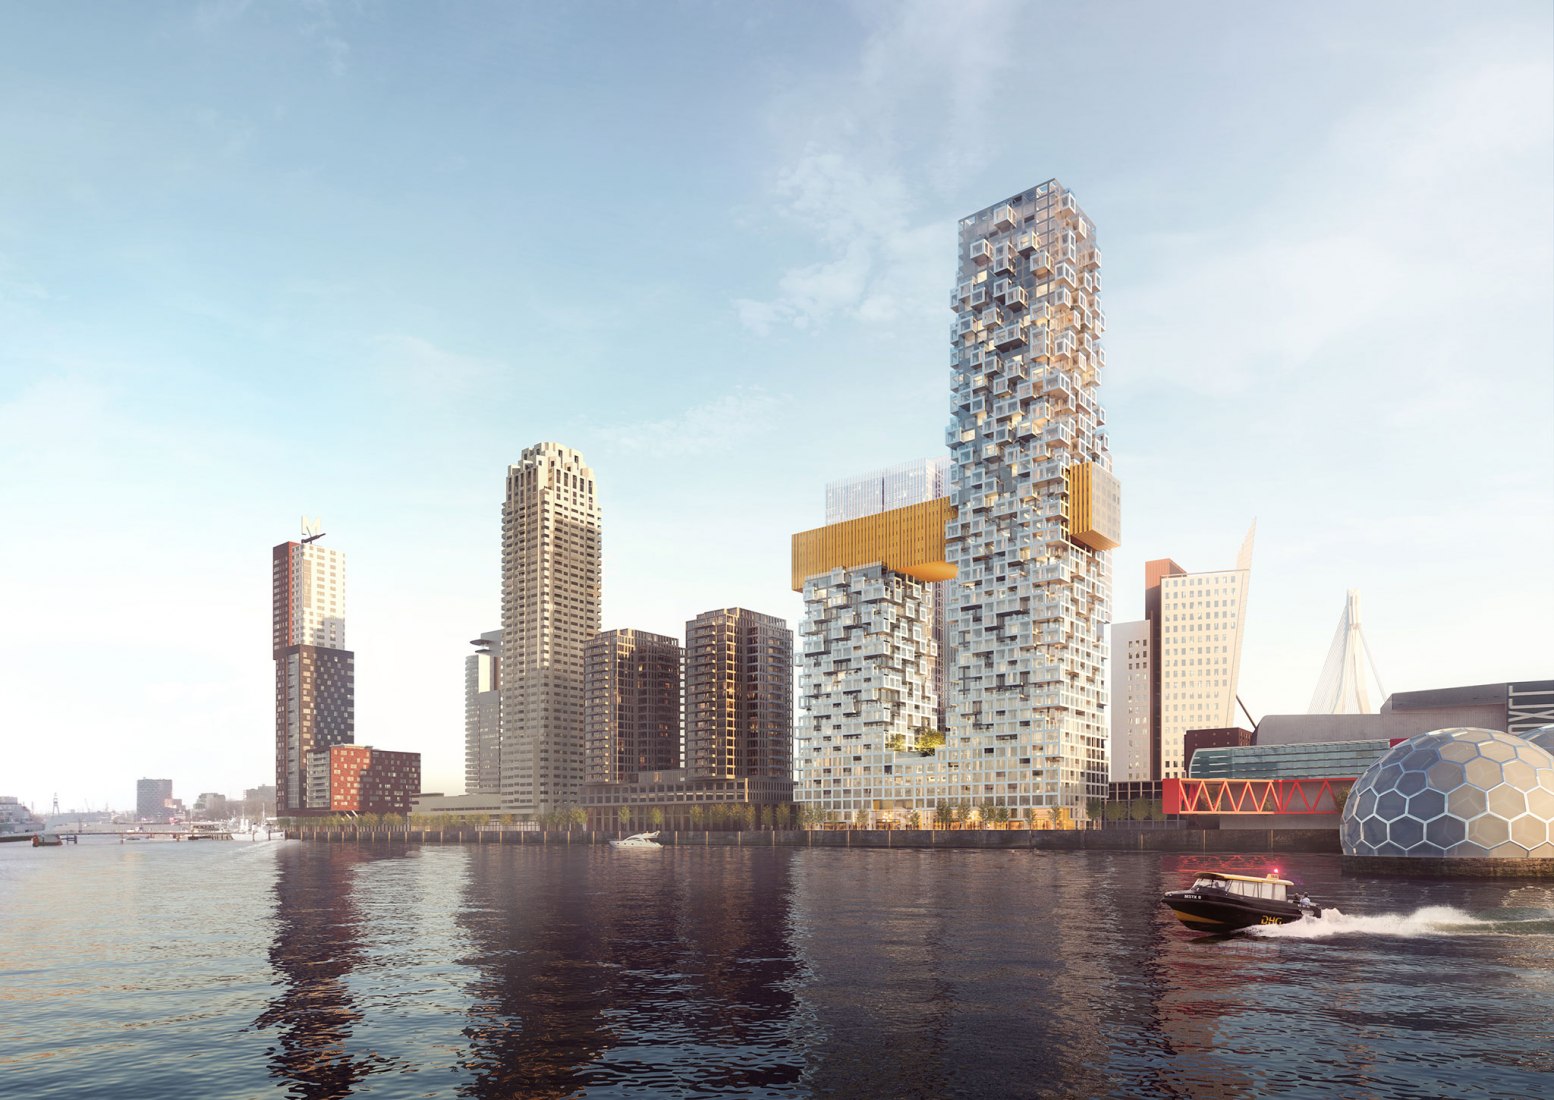 New Skyscraper in Rotterdam. MVRDV wins the competition to design 